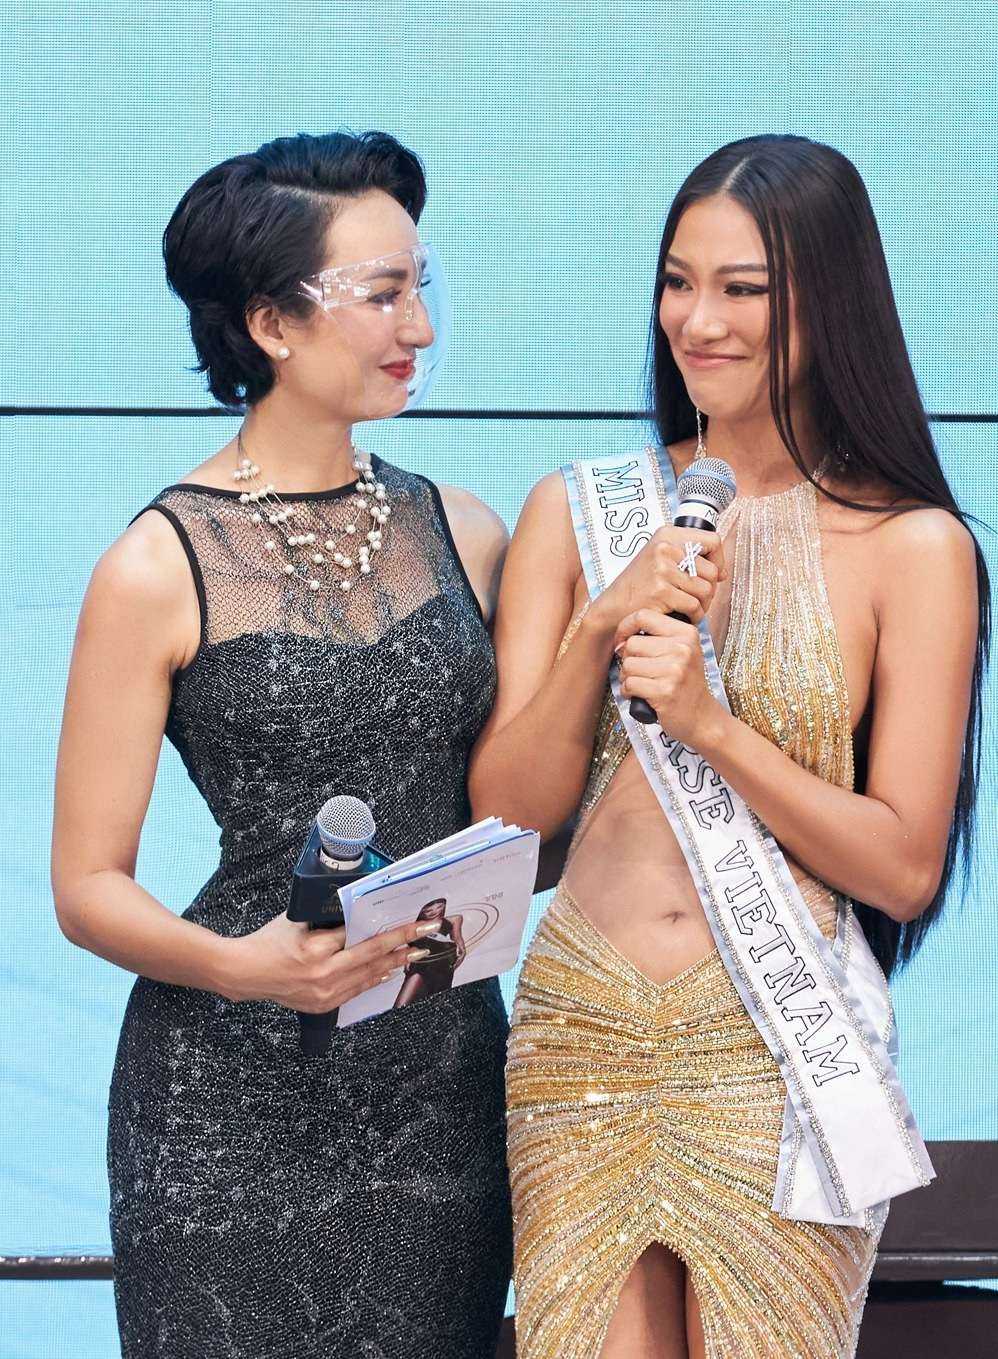 Á hậu Việt đầu tiên trong lịch sử được trao vương miện thi Hoa hậu Hoàn vũ - 7